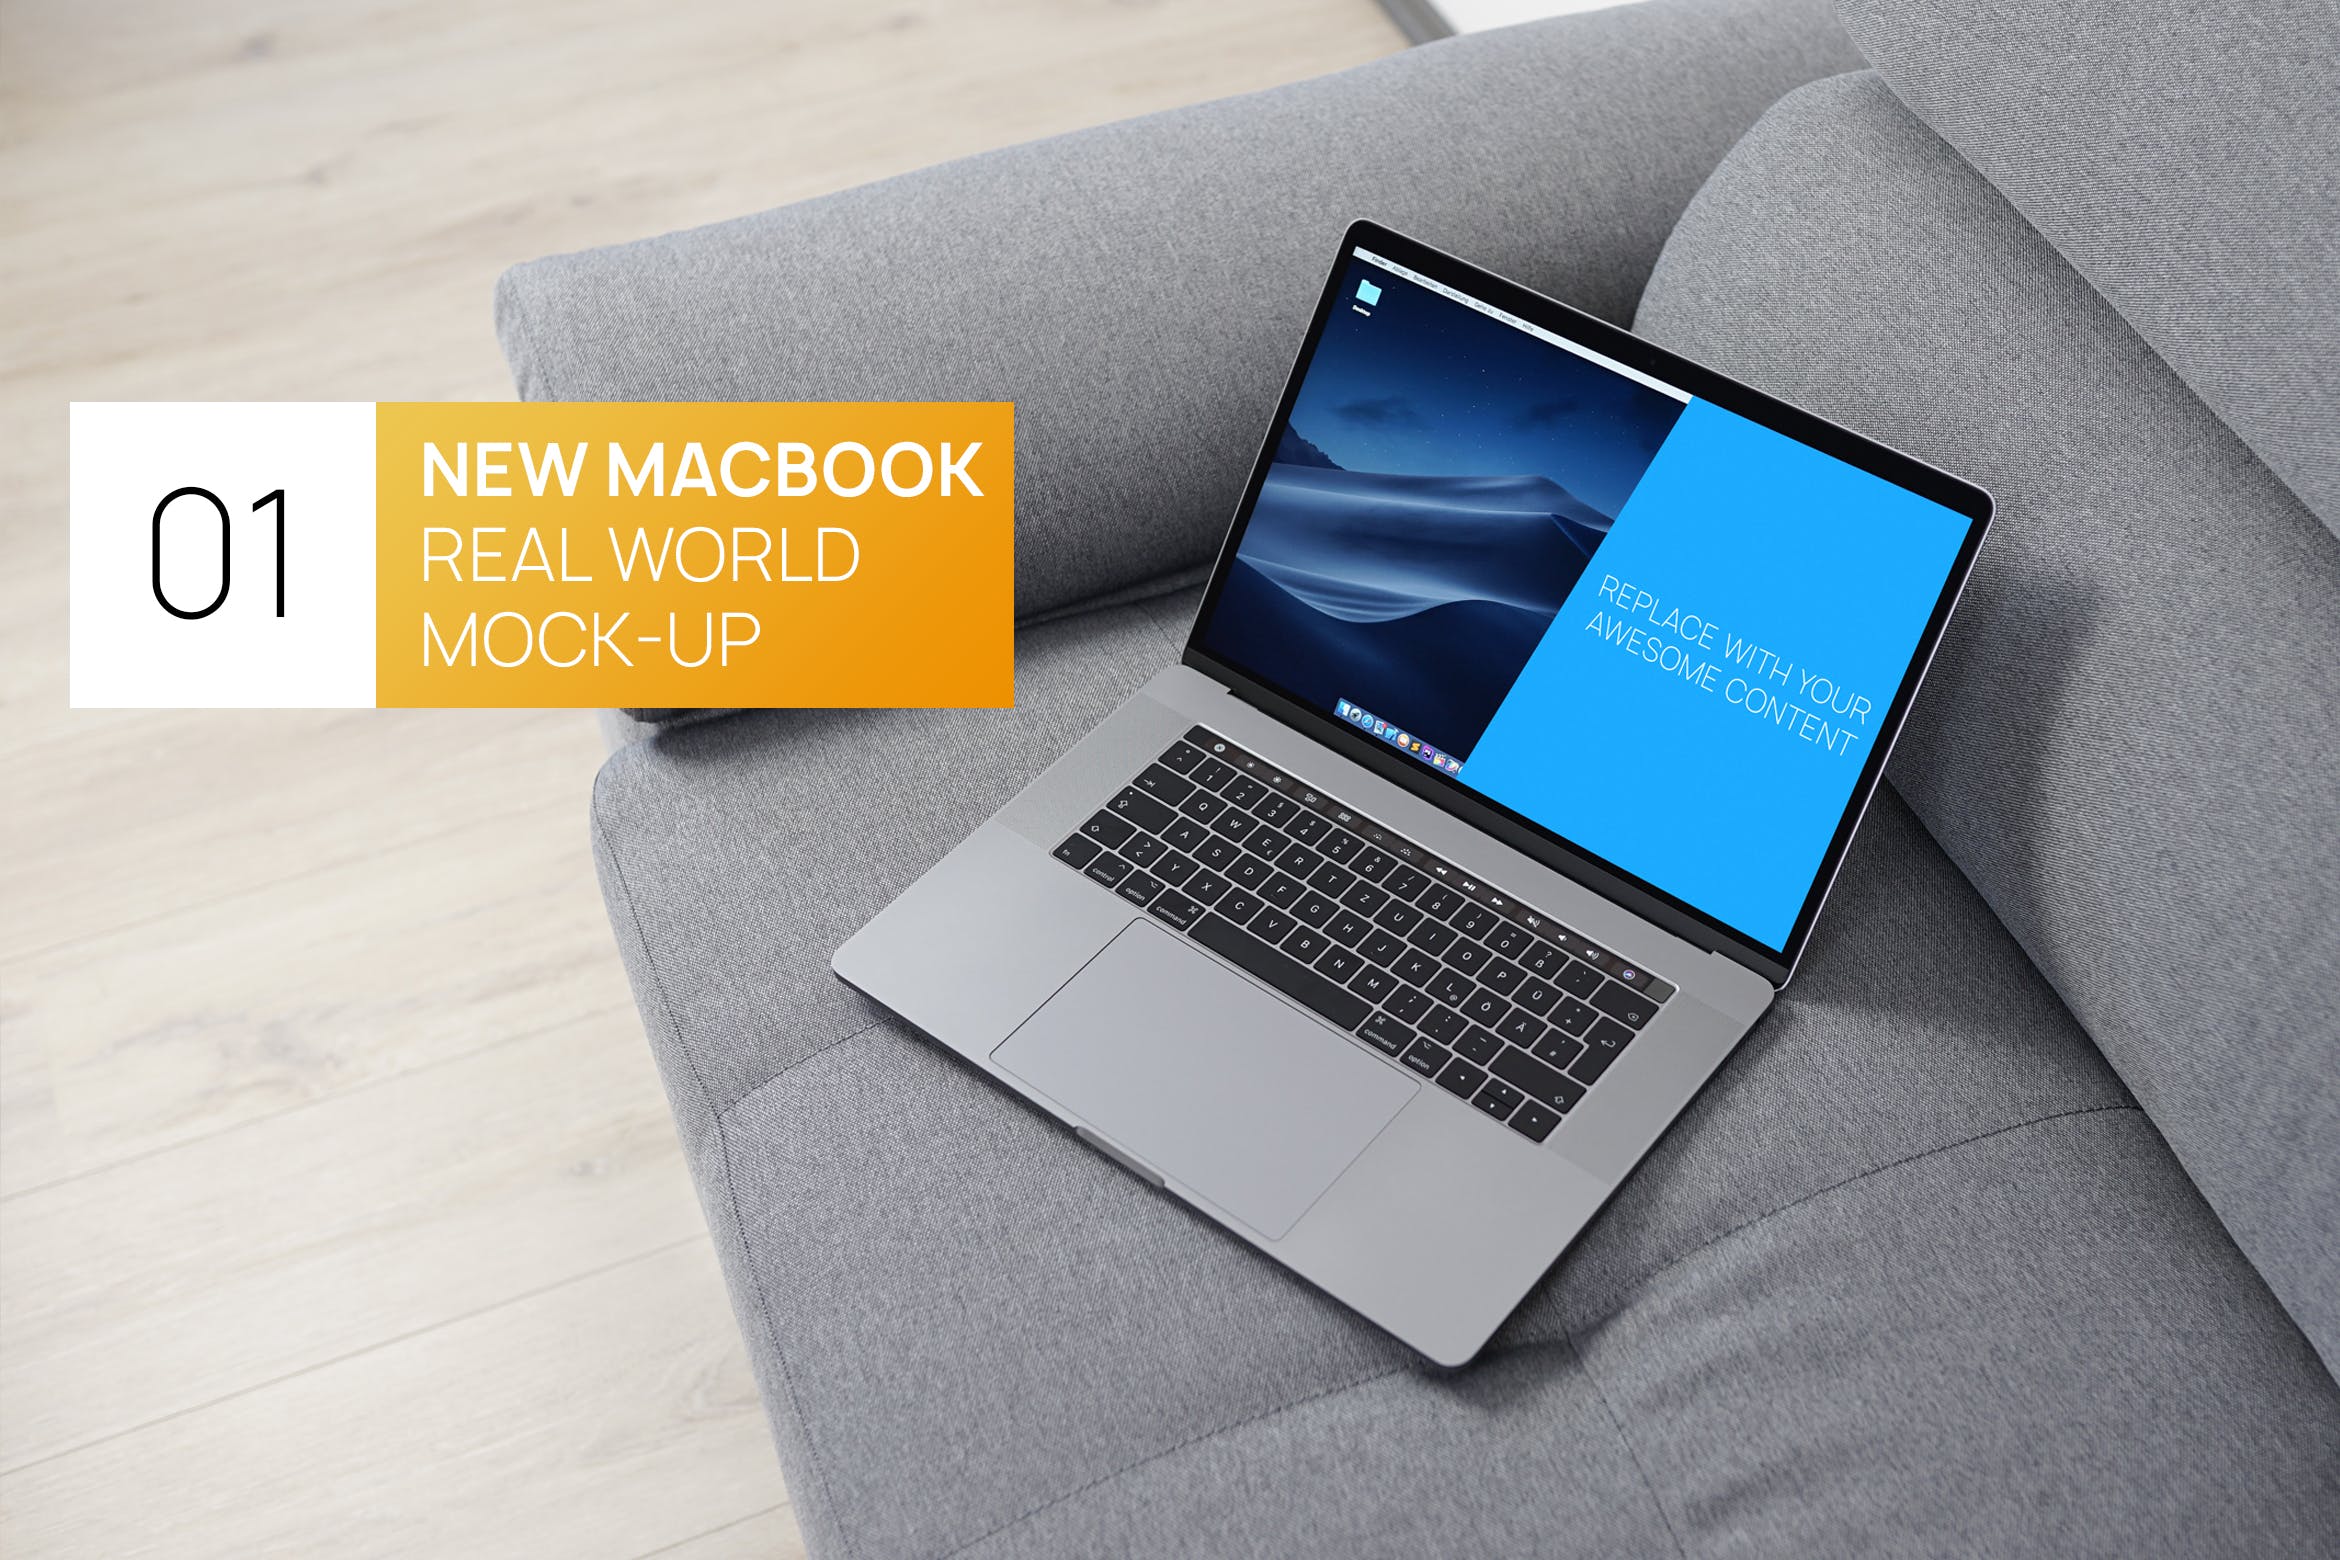 布艺沙发上的MacBook Pro电脑蚂蚁素材精选样机 New MacBook Pro Touchbar Real World Mock-up插图